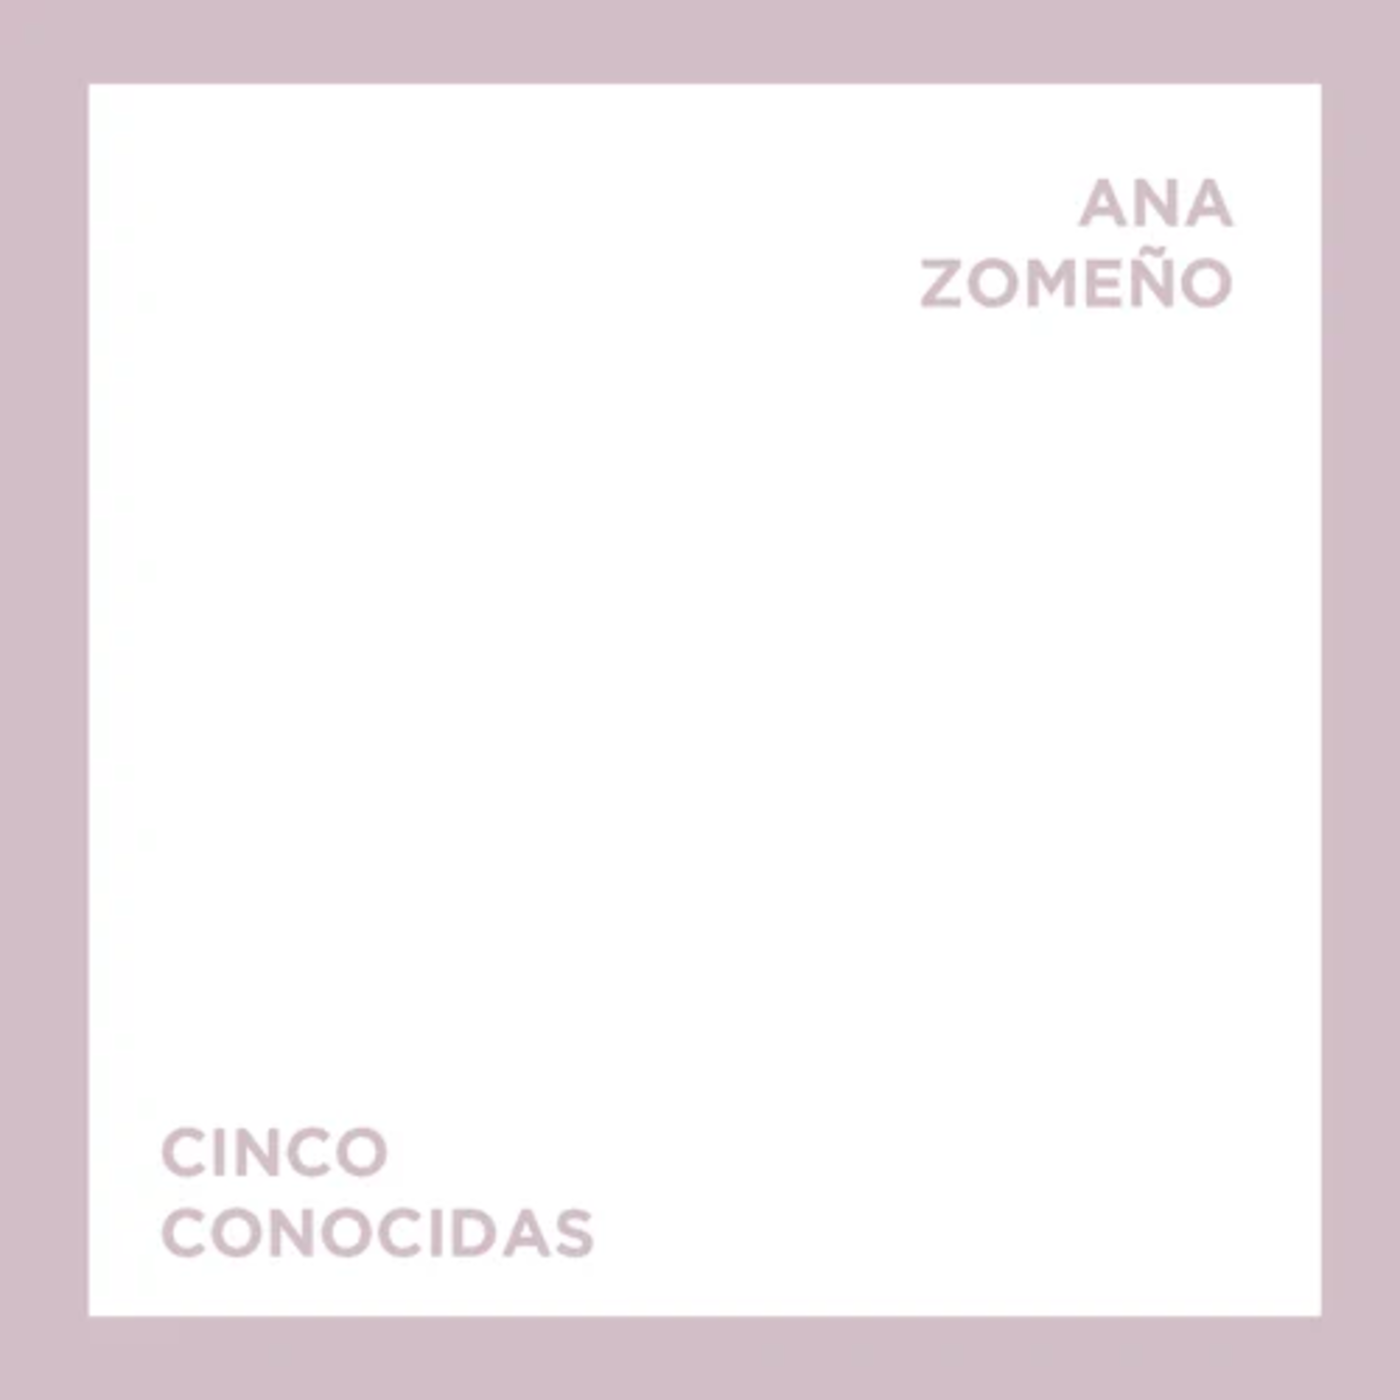 Ana Zomeño - Cinco conocidas | musica en valencià